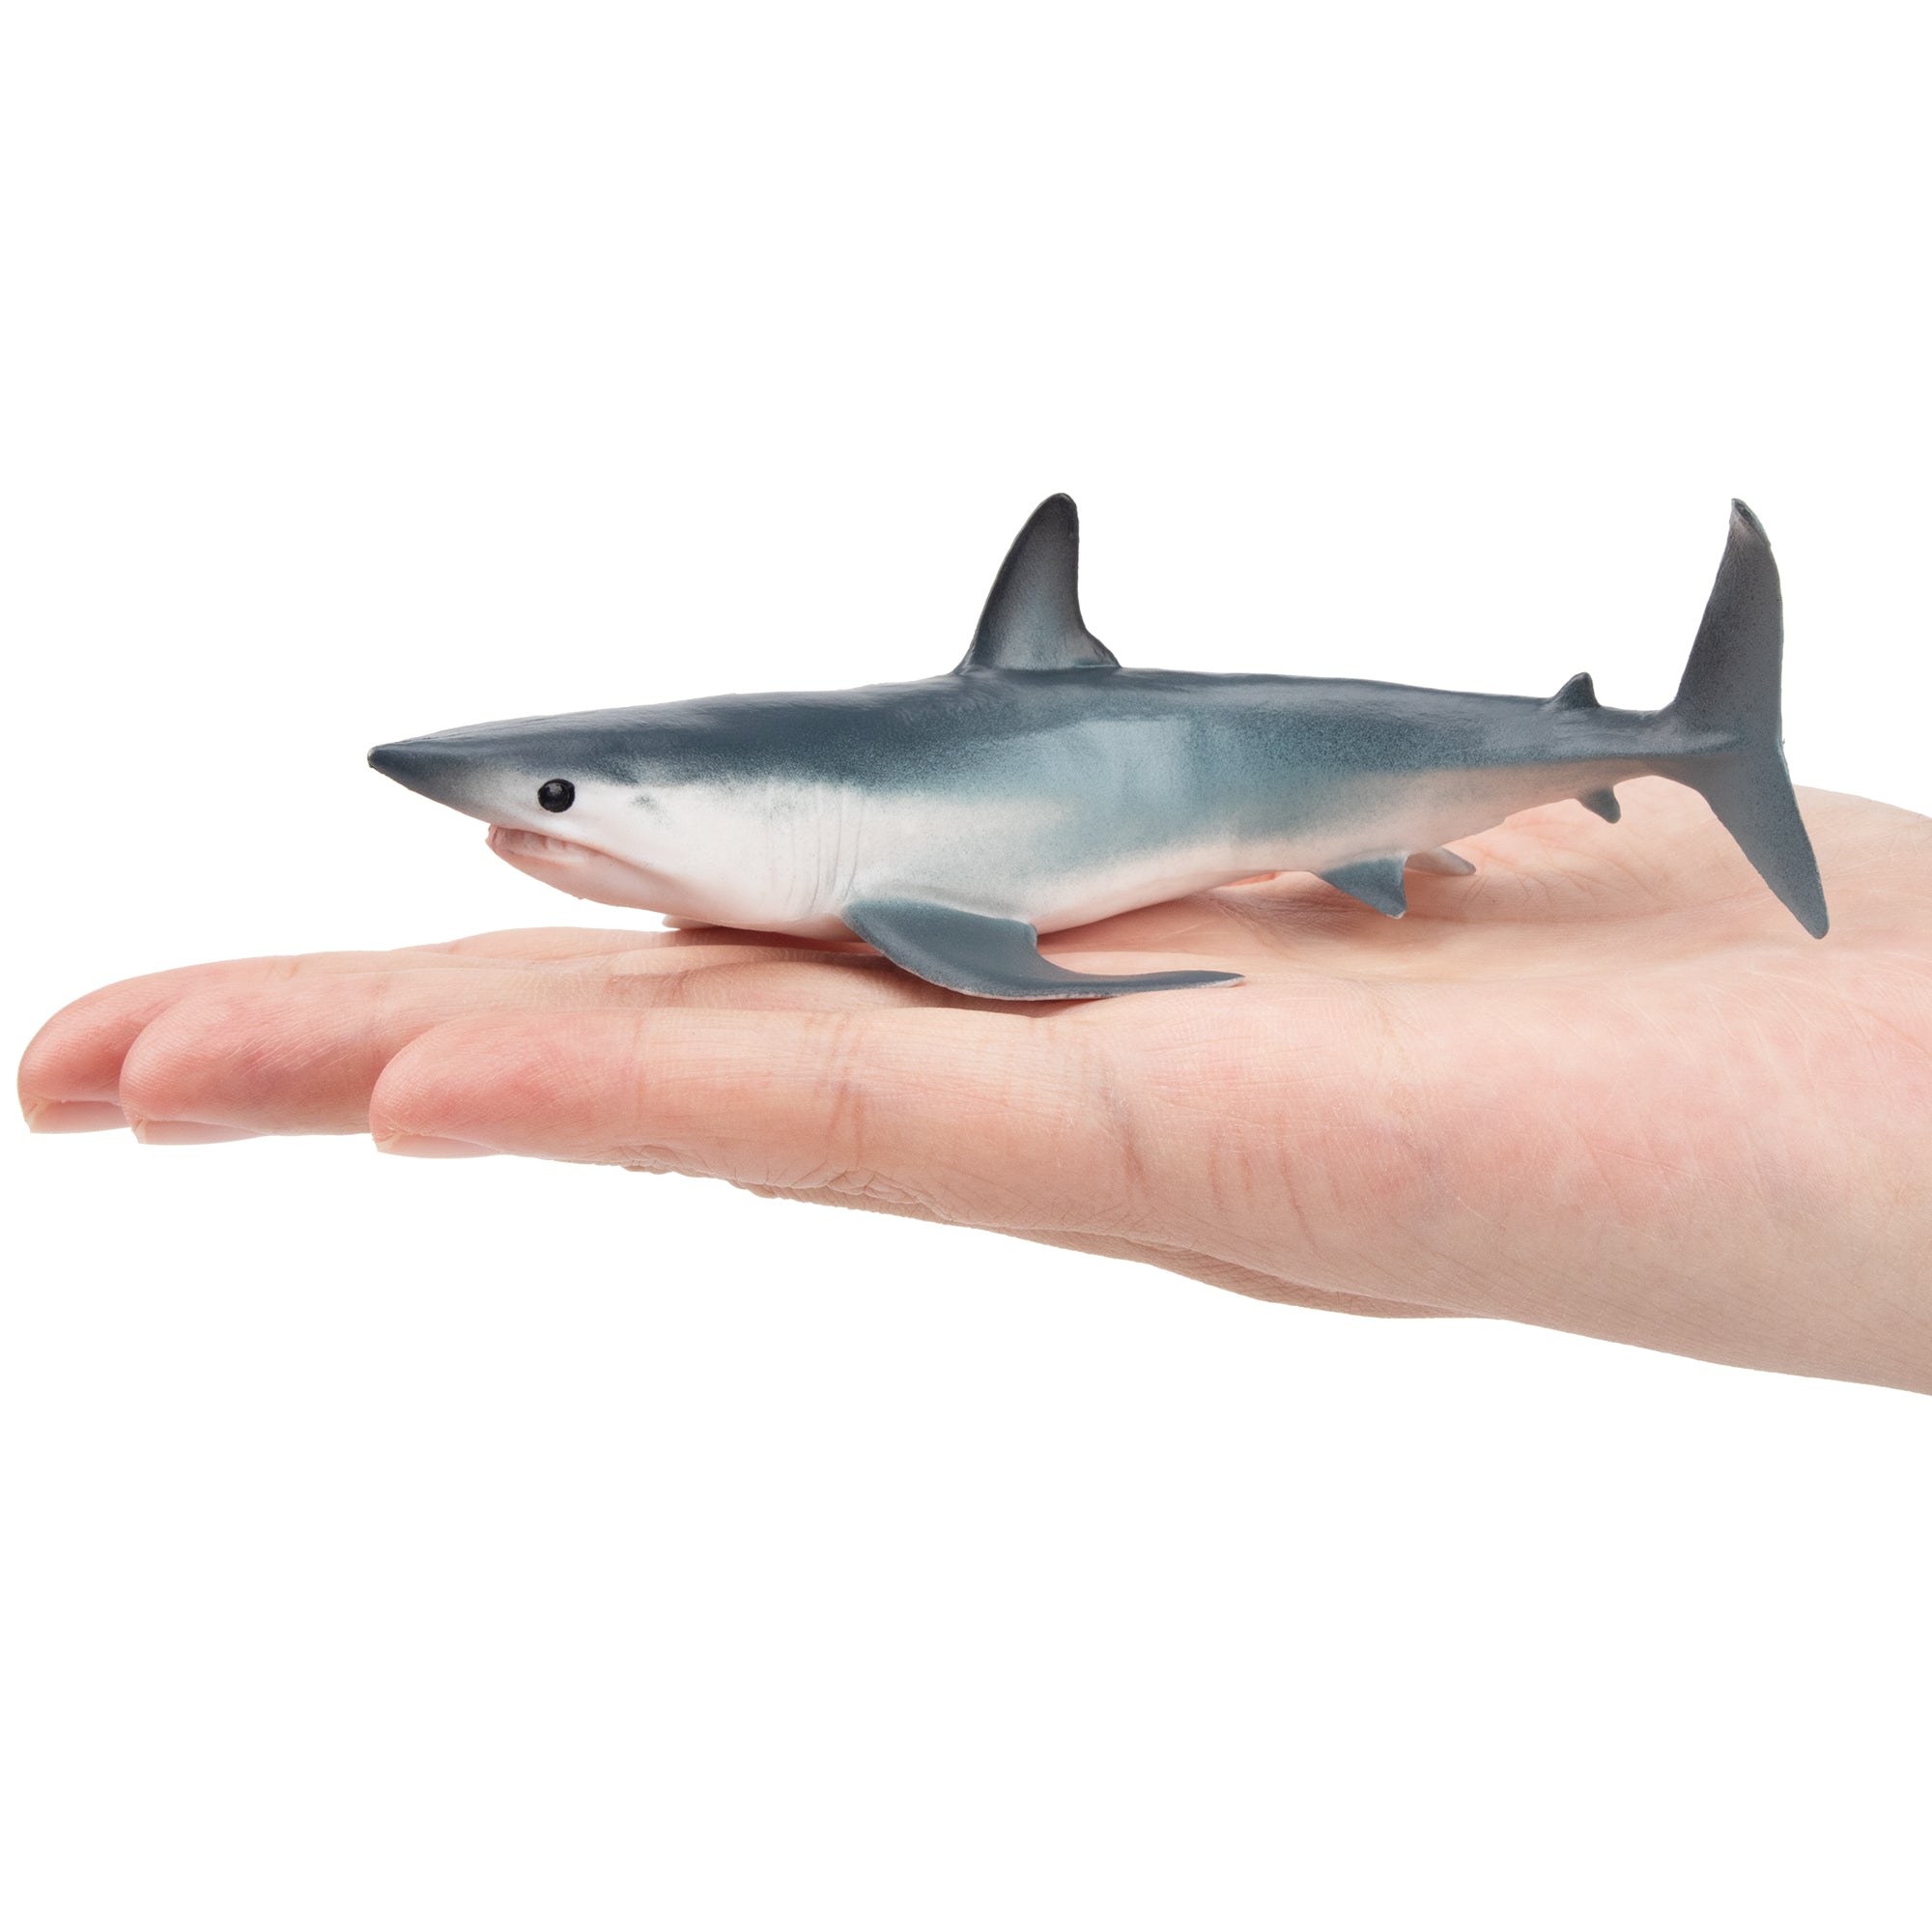 Toymany Shortfin Mako Shark Figurine Toy-on hand